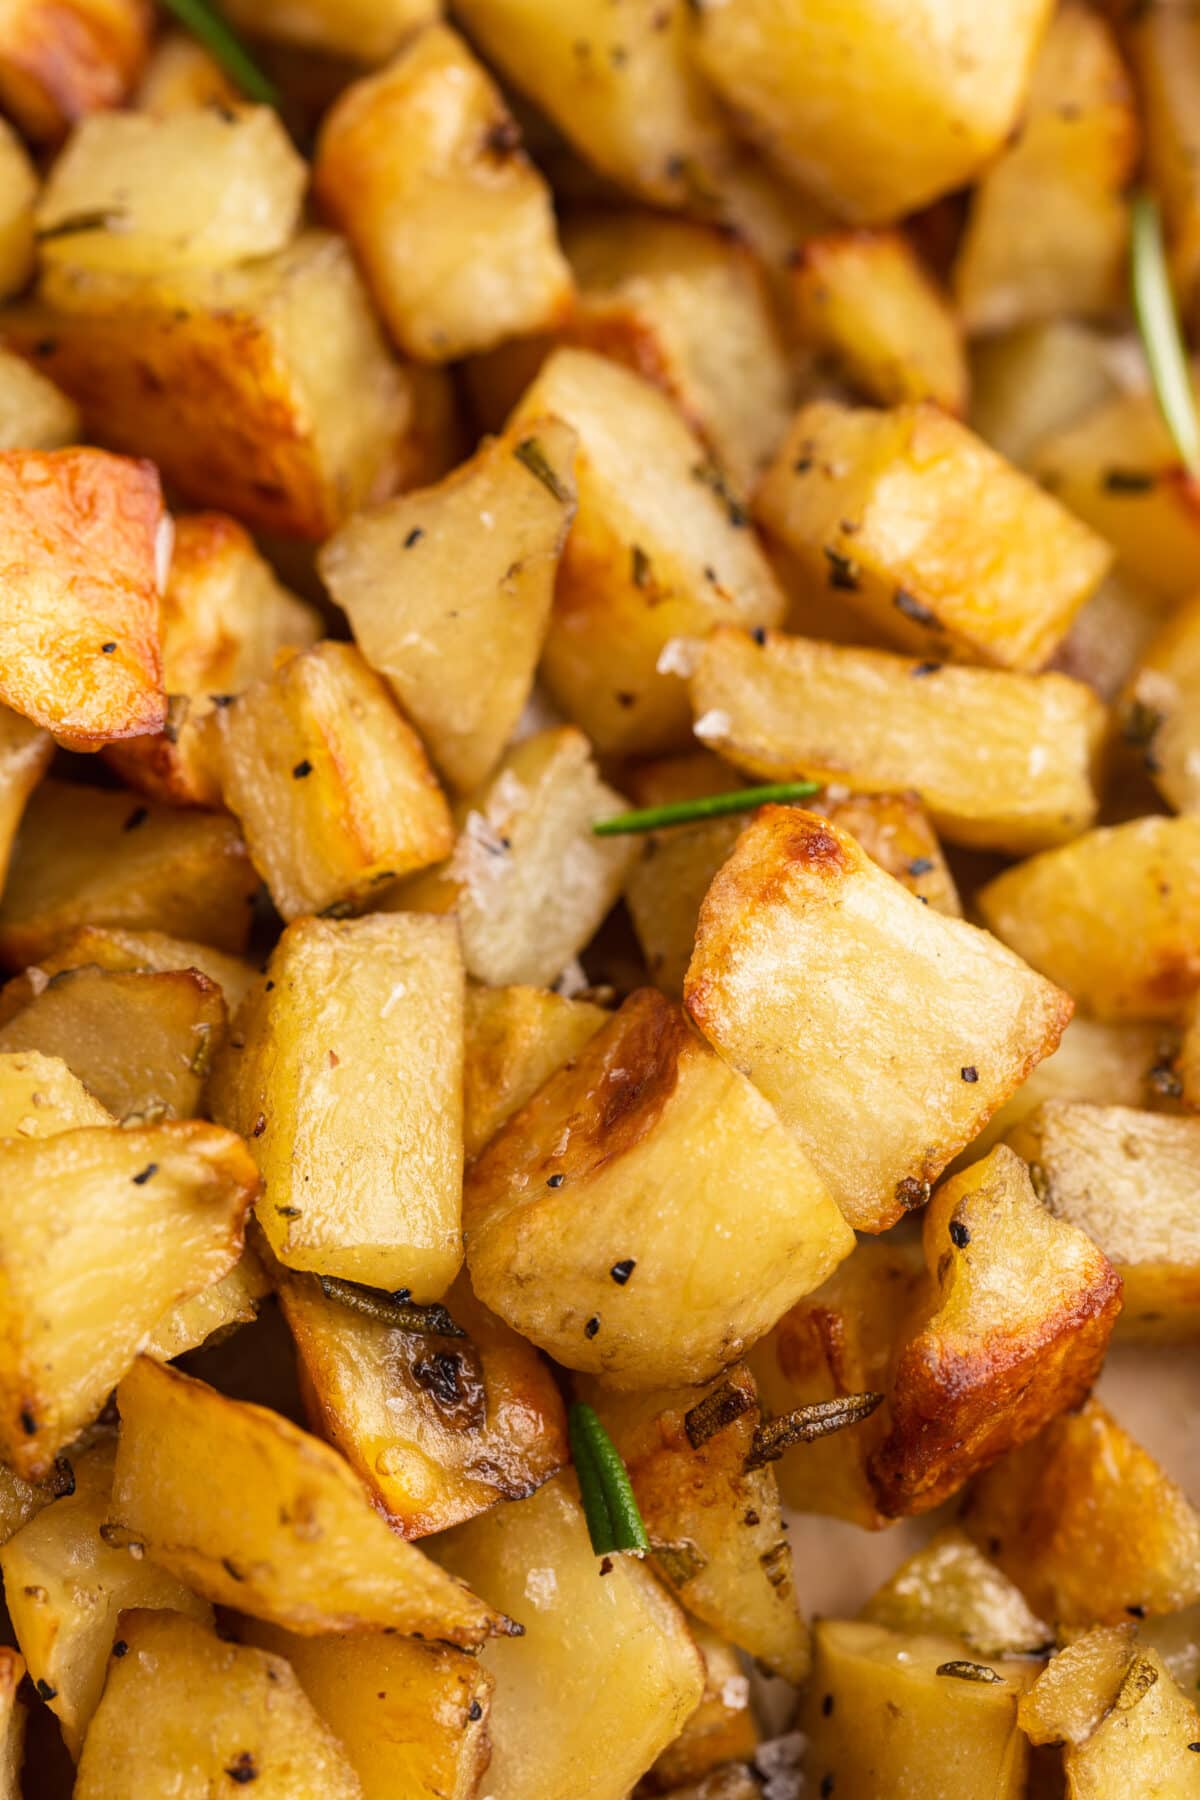 Close-up of diced potatoes.